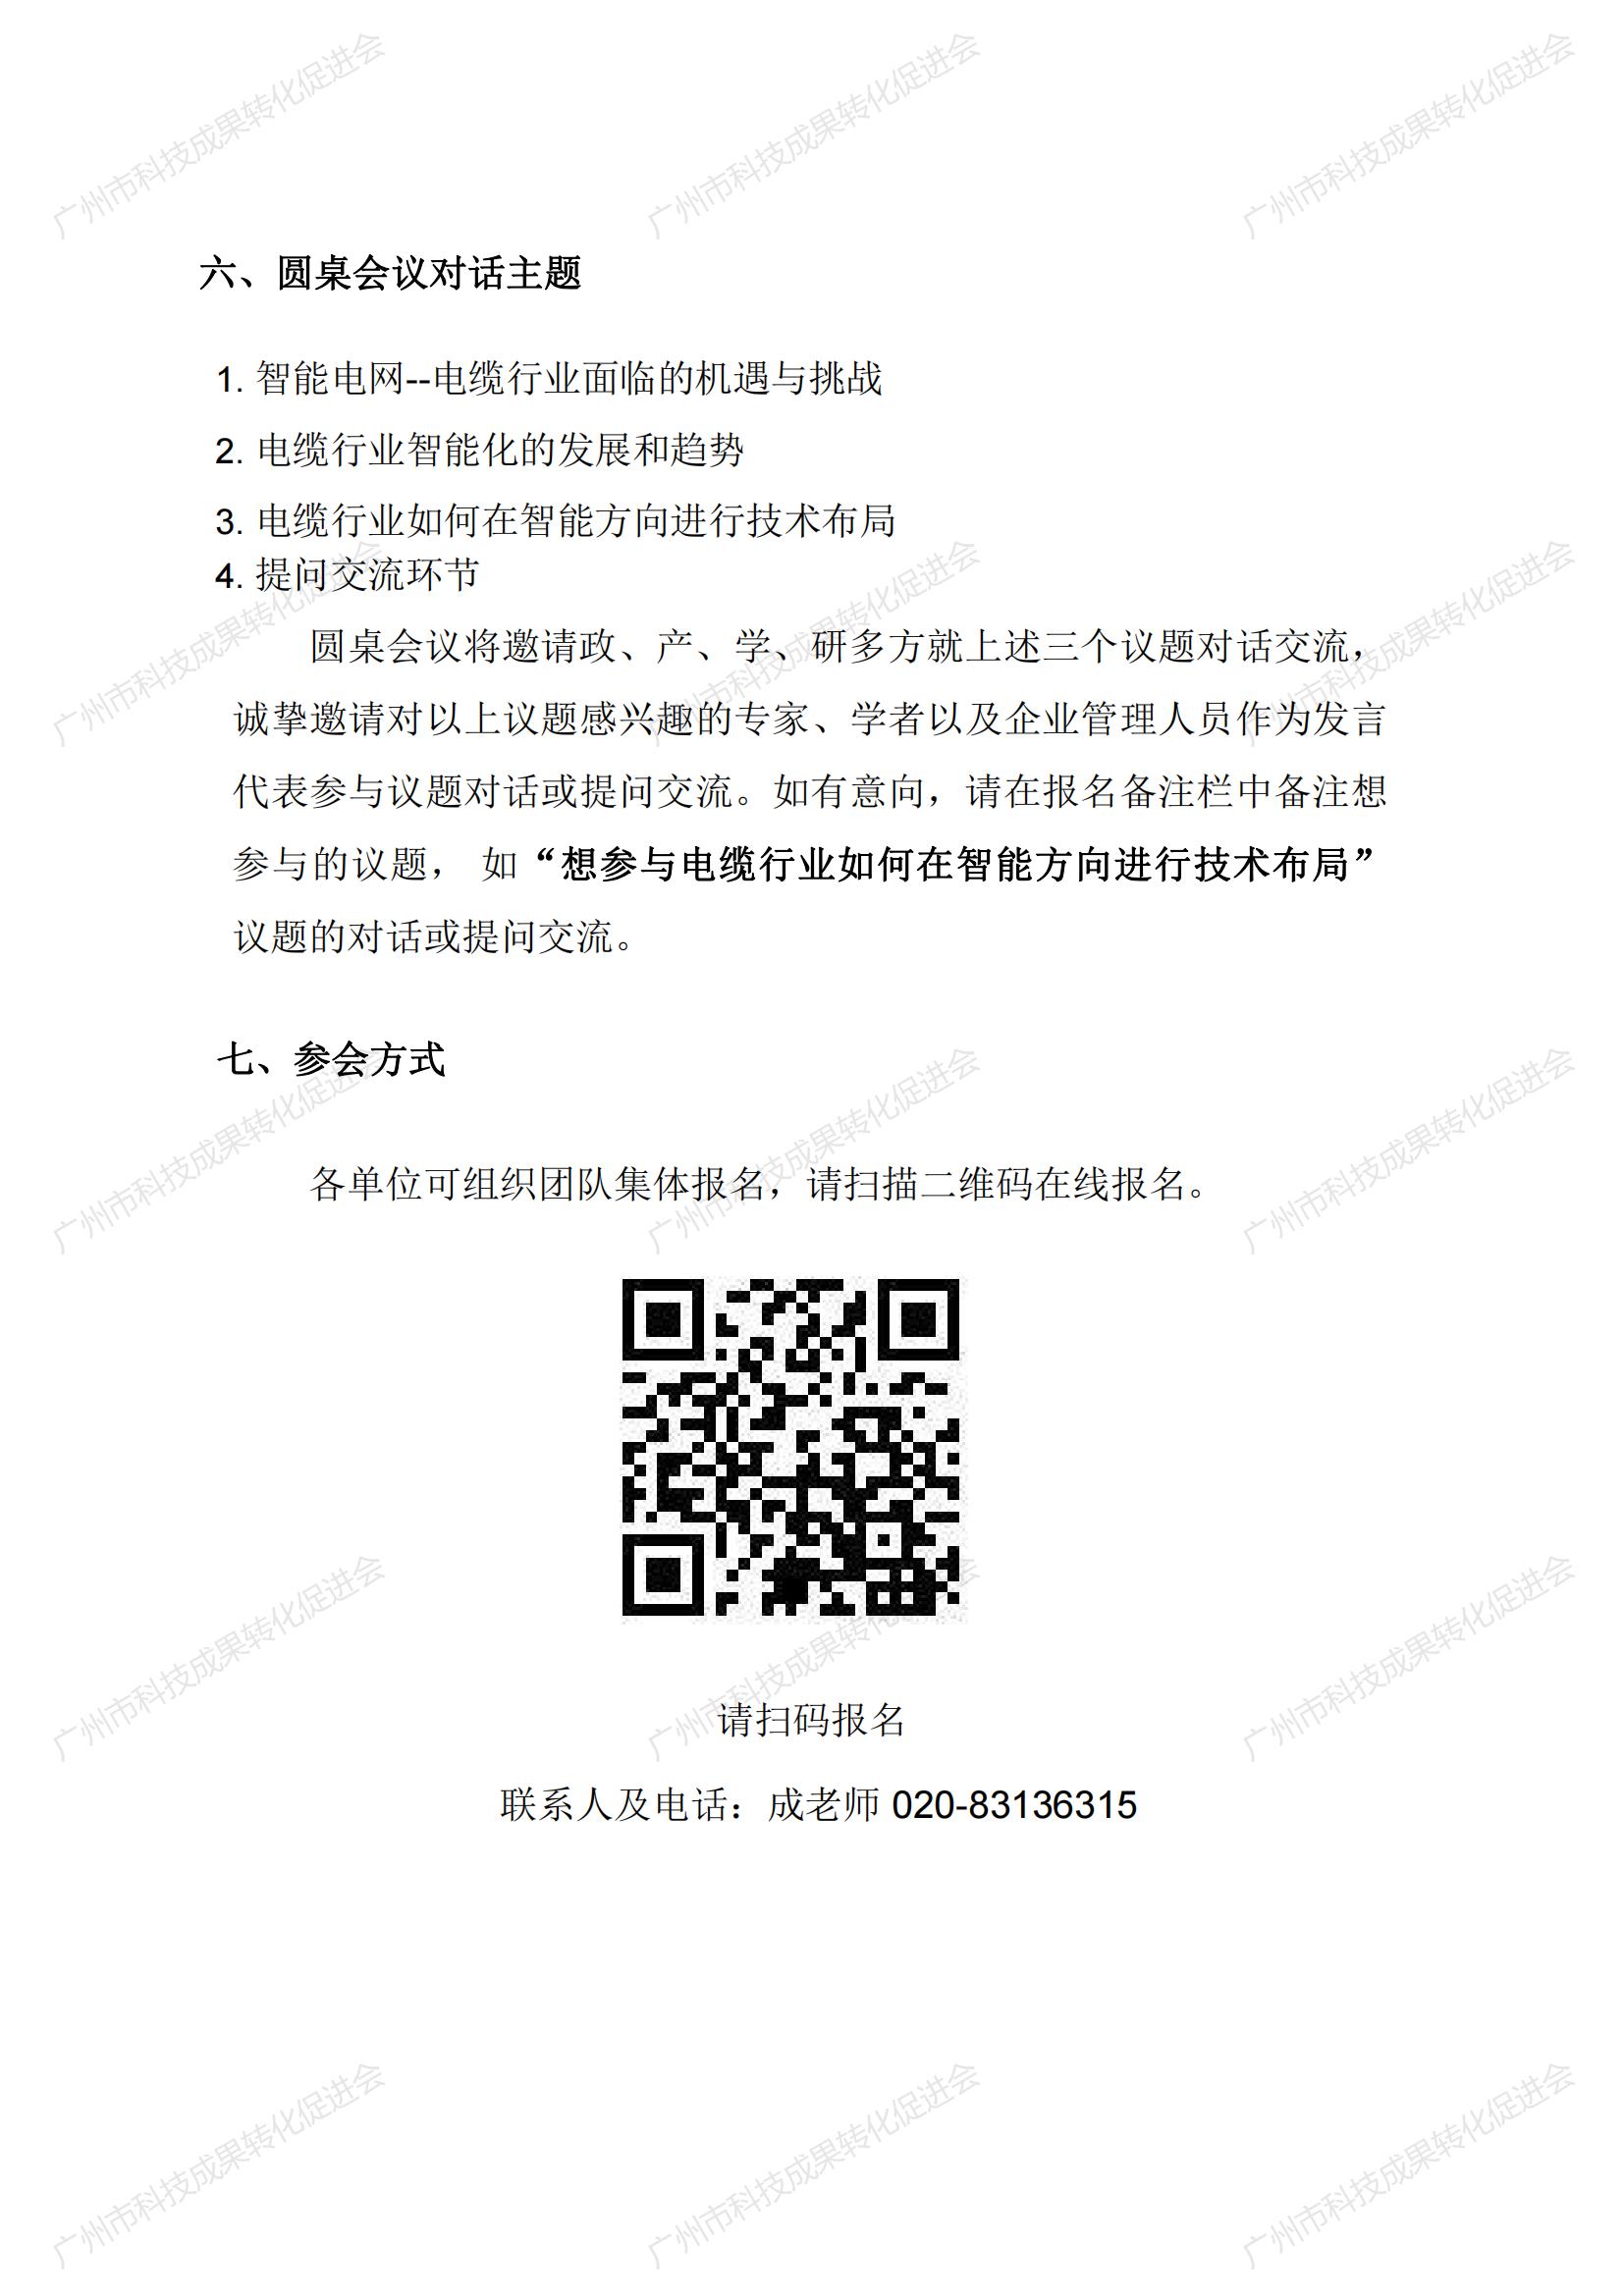 2021年广州市“国际学术会议之都”智能电缆学术会会议通知11.11_03.jpg